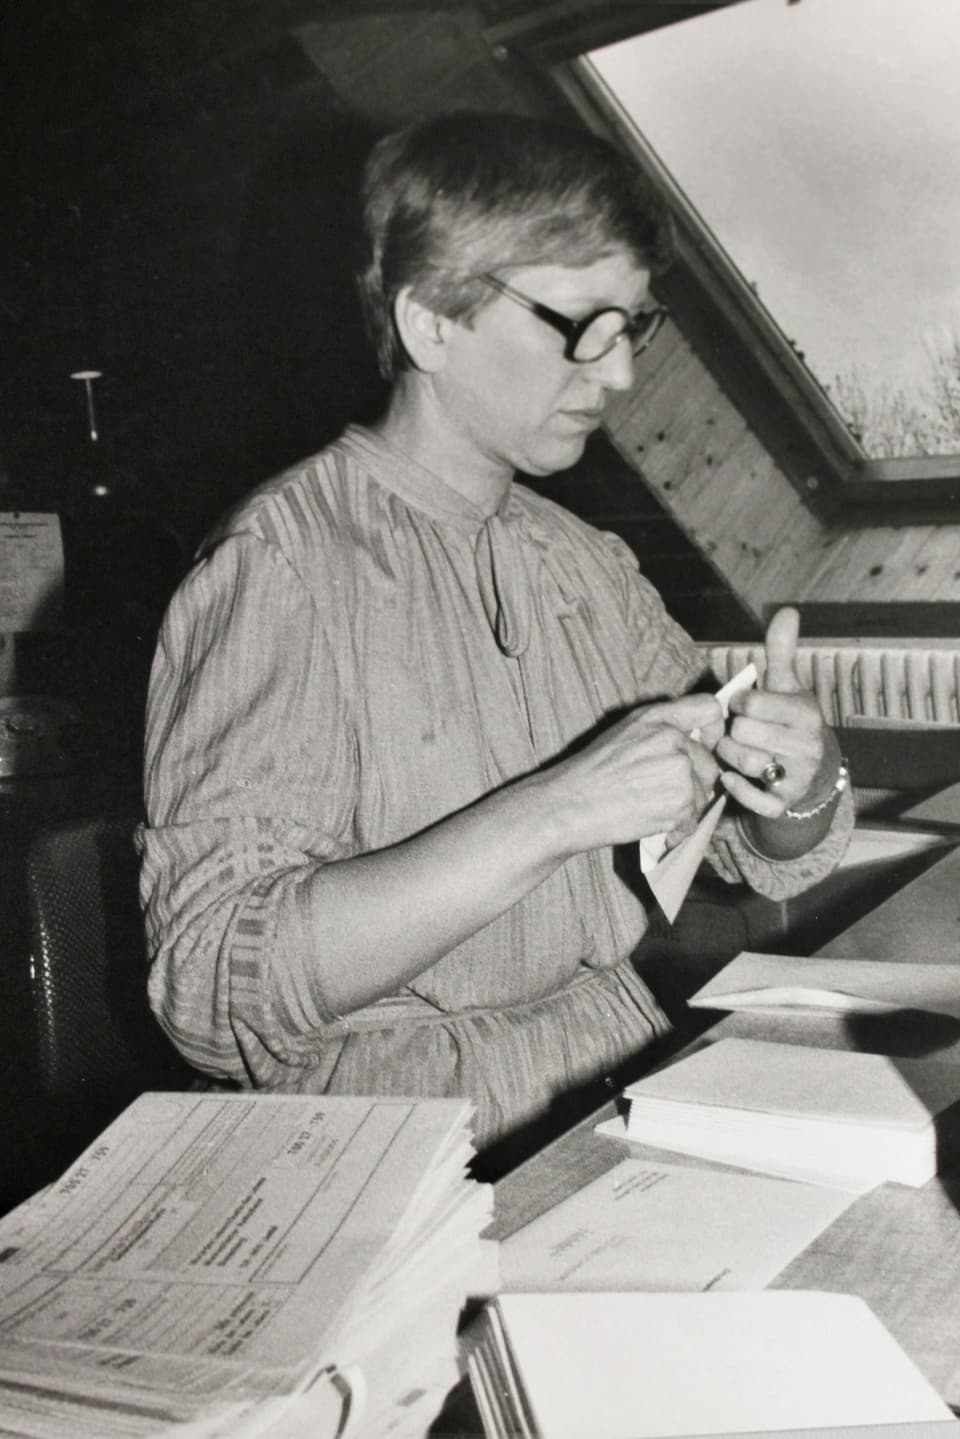 Schwarzweiss Bild: Frau mit Kleid, kurzen Haaren und grosser Brille sitzt an einem Schreibtisch und tütet gerade einen Brief in ein Couvert ein.